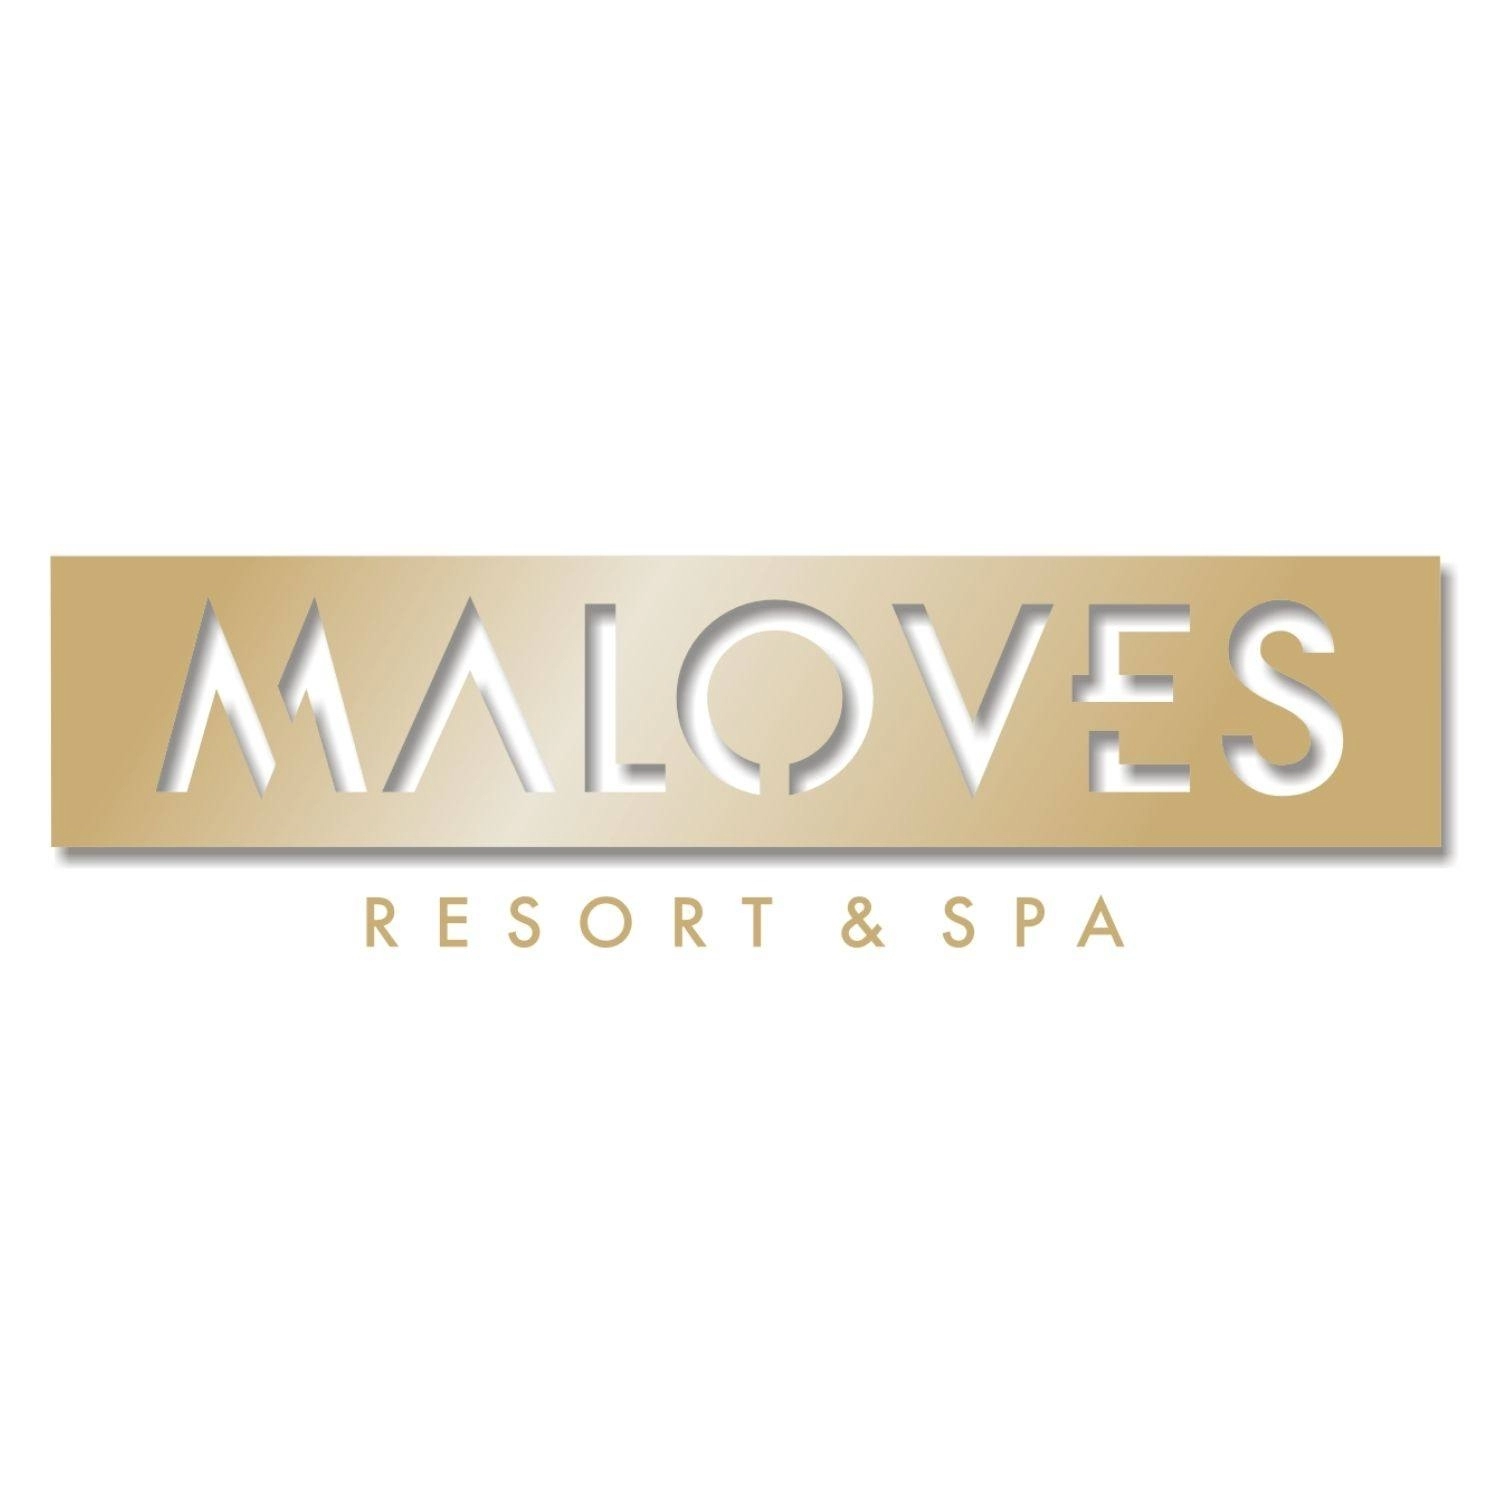 Maloves Resort & SPA